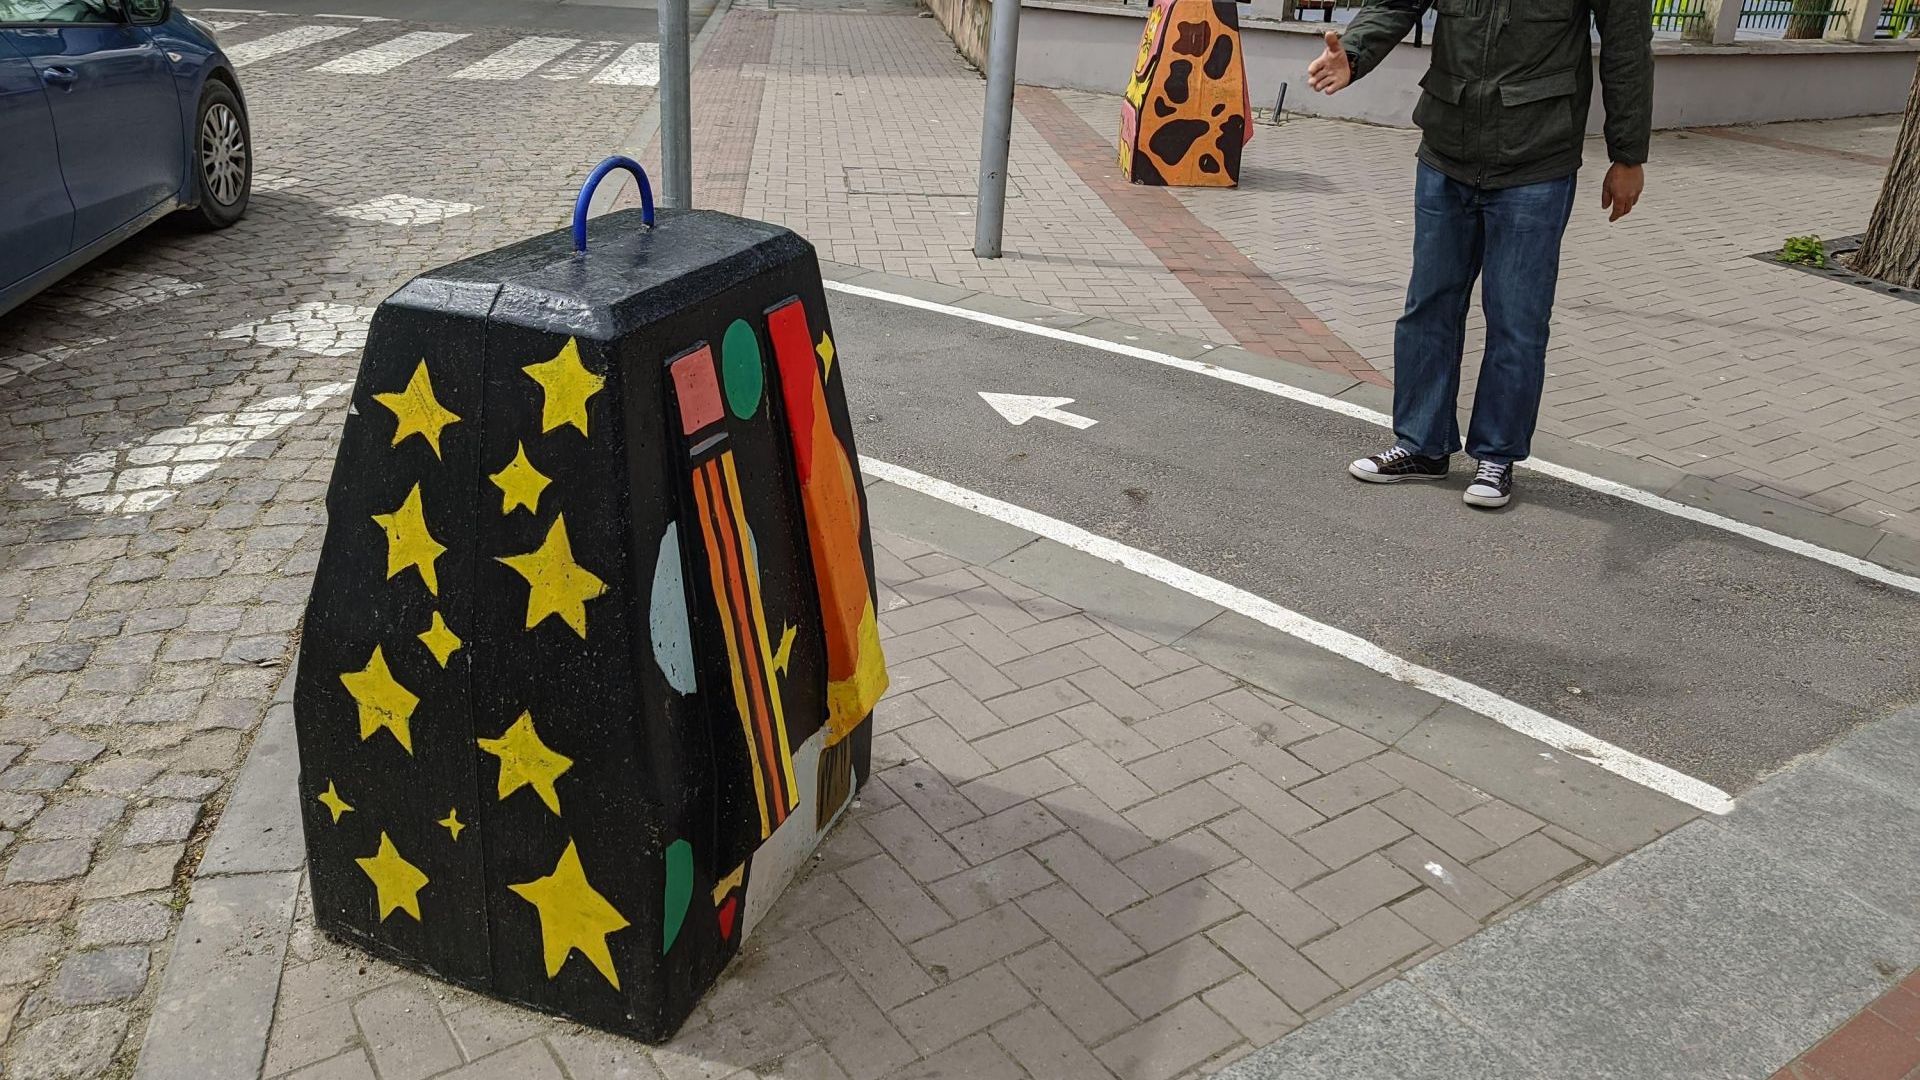 Авангардни графити разкрасиха улични ограничители във Варна. Става въпрос за